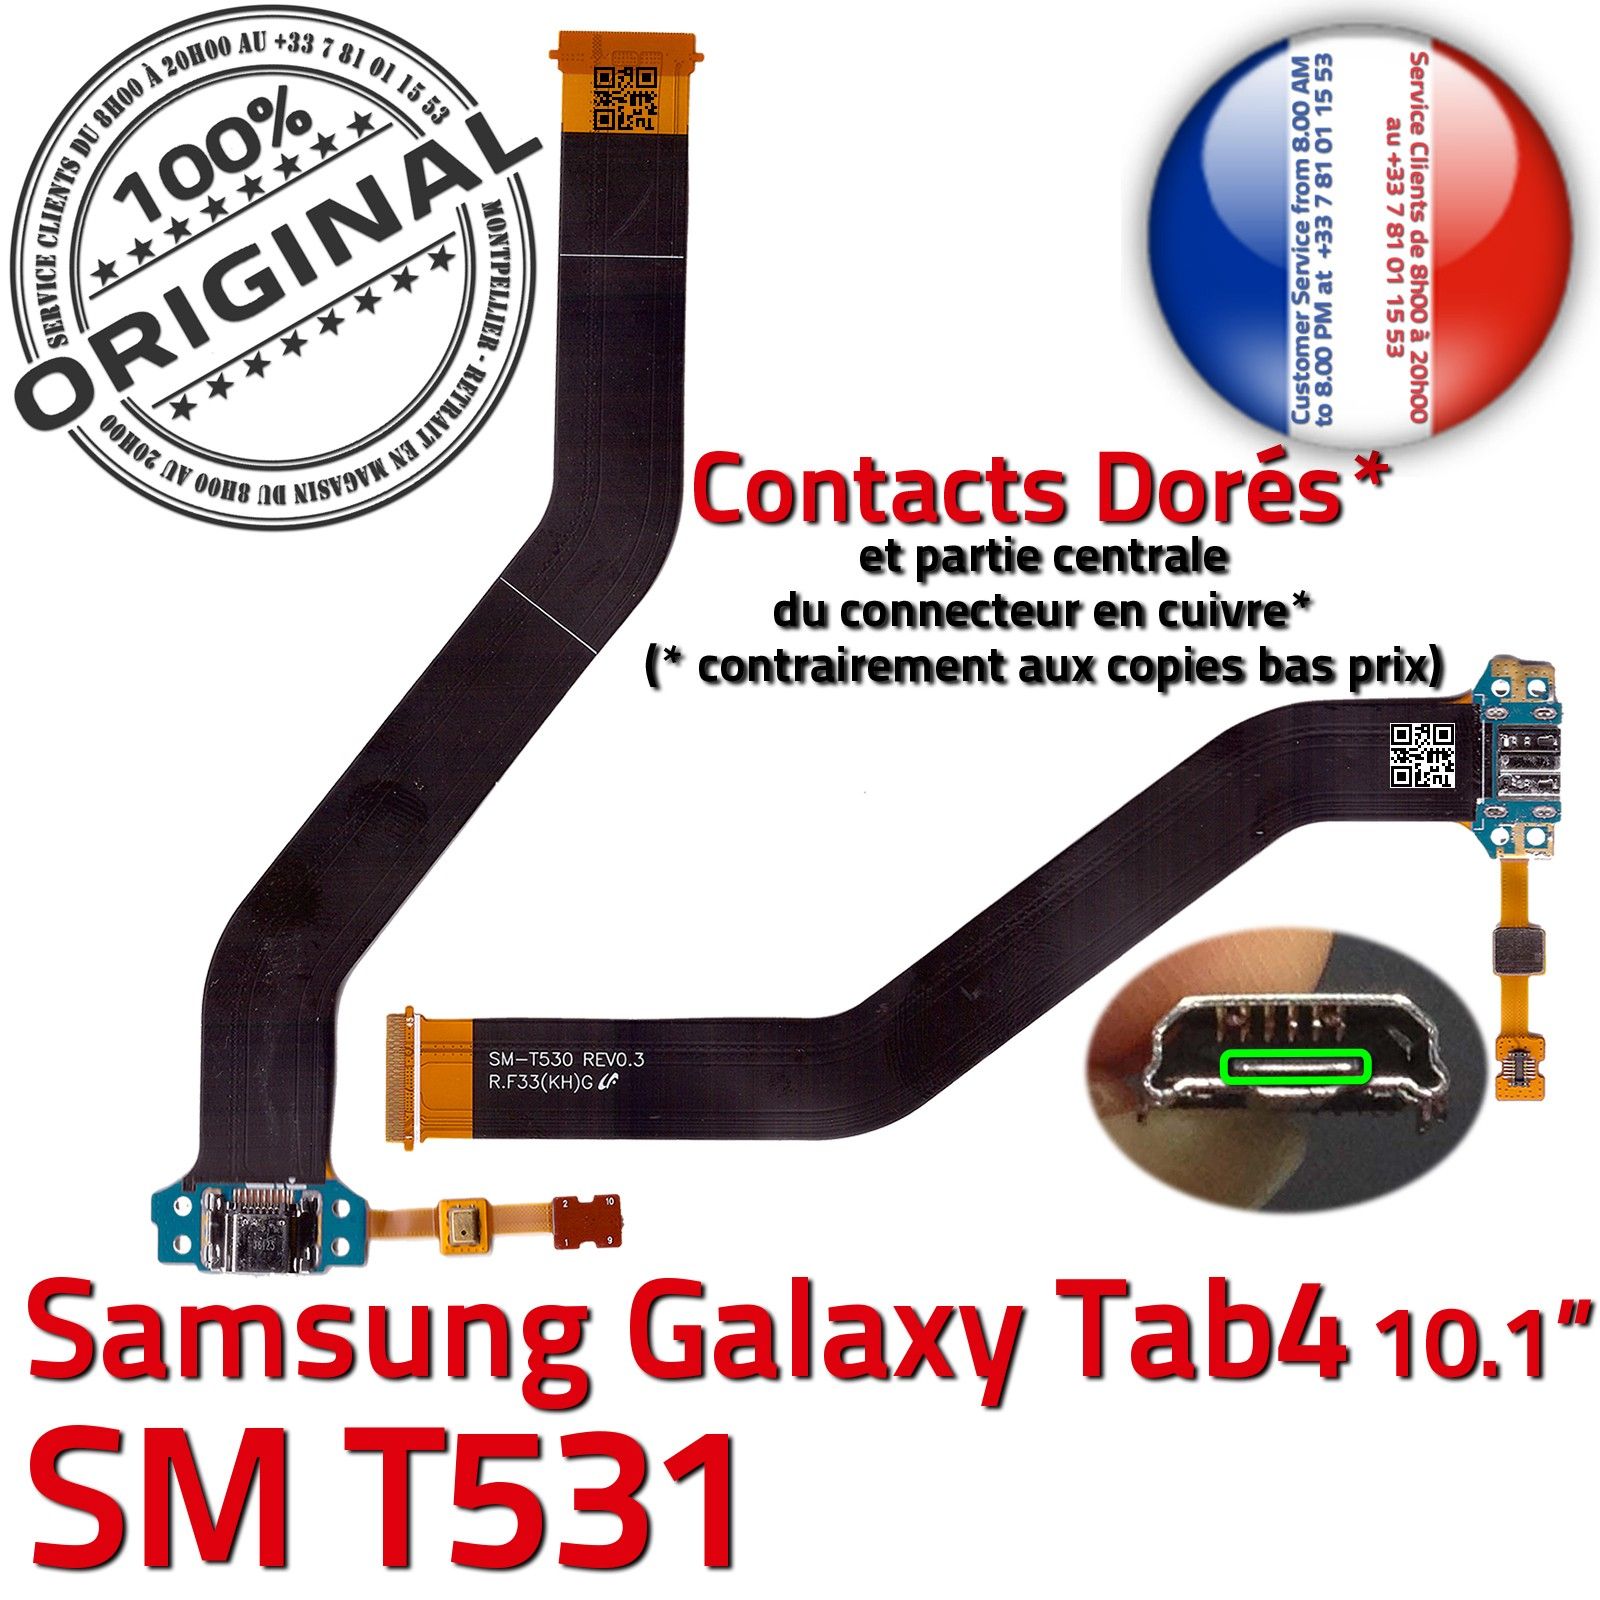 ORIGINAL Samsung Galaxy TAB4 SM-T531 Connecteur de Charge Chargeur MicroUSB Nappe OFFICIELLE Qualité Contacts Dorés Réparation